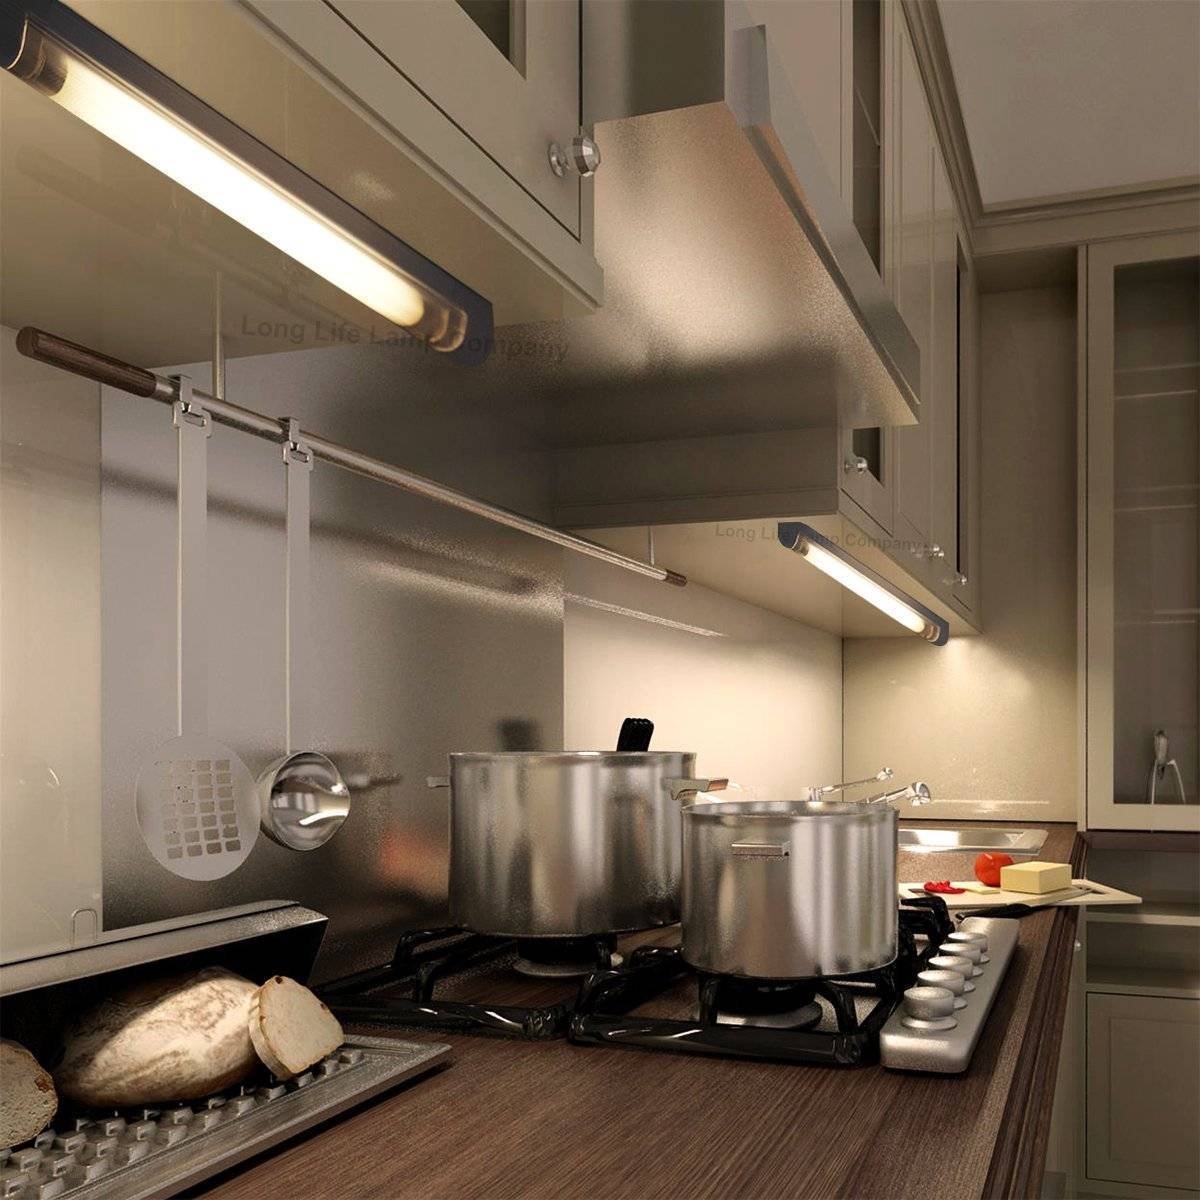 Подсветка рабочей зоны для кухни под шкафы светодиодная